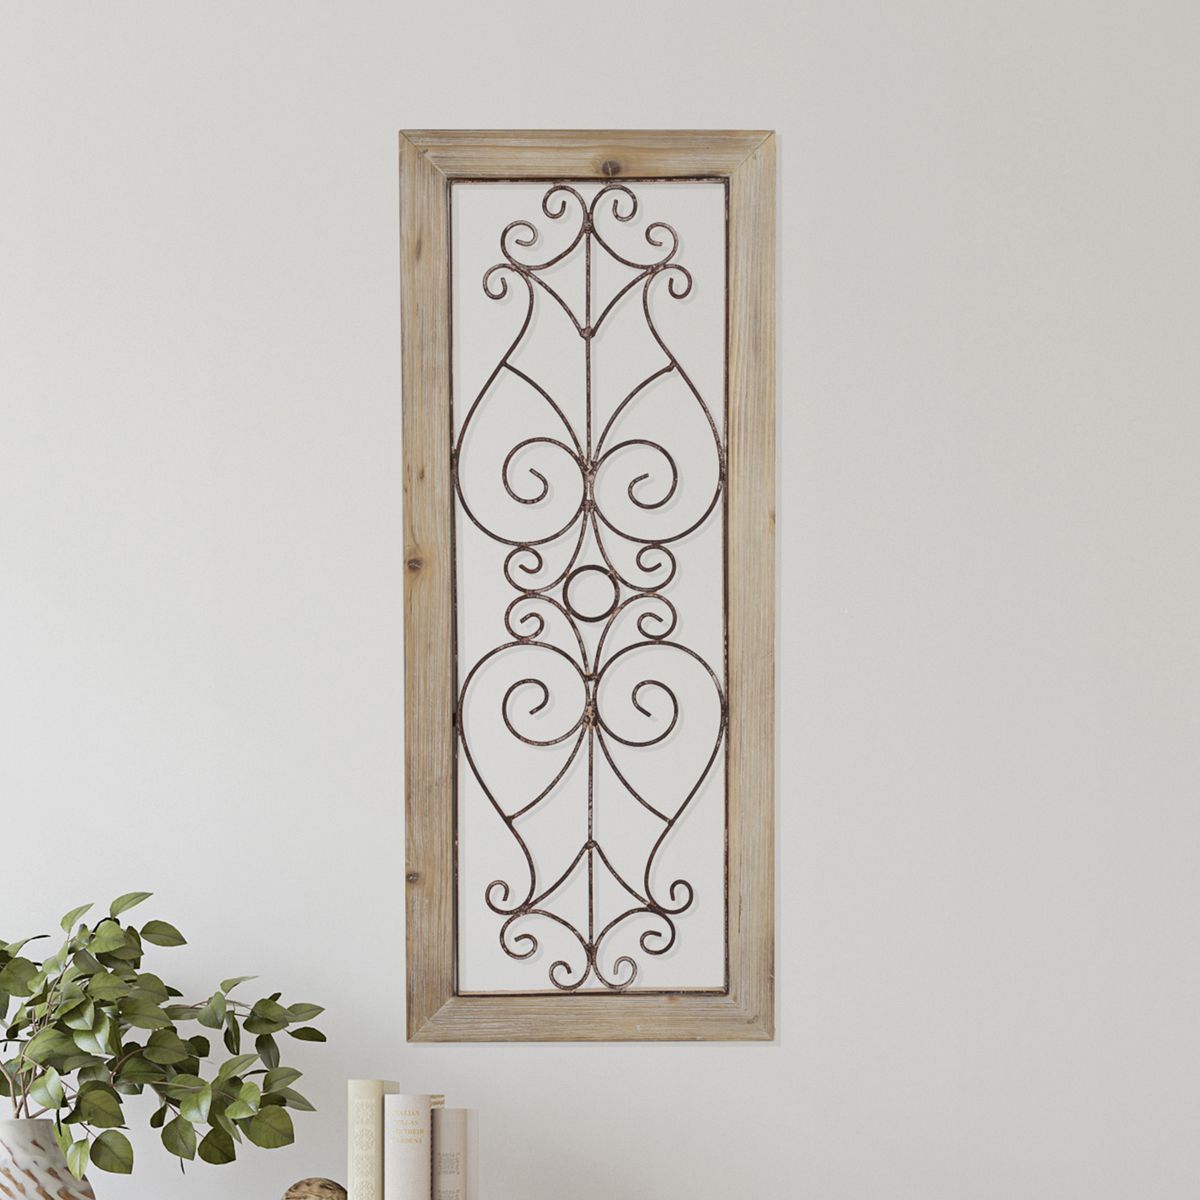 Metal & Wood Wall Panel  Decorative Swirls and Scrolls Trimmed in a Rustic Wood Frame for Home,... | Target